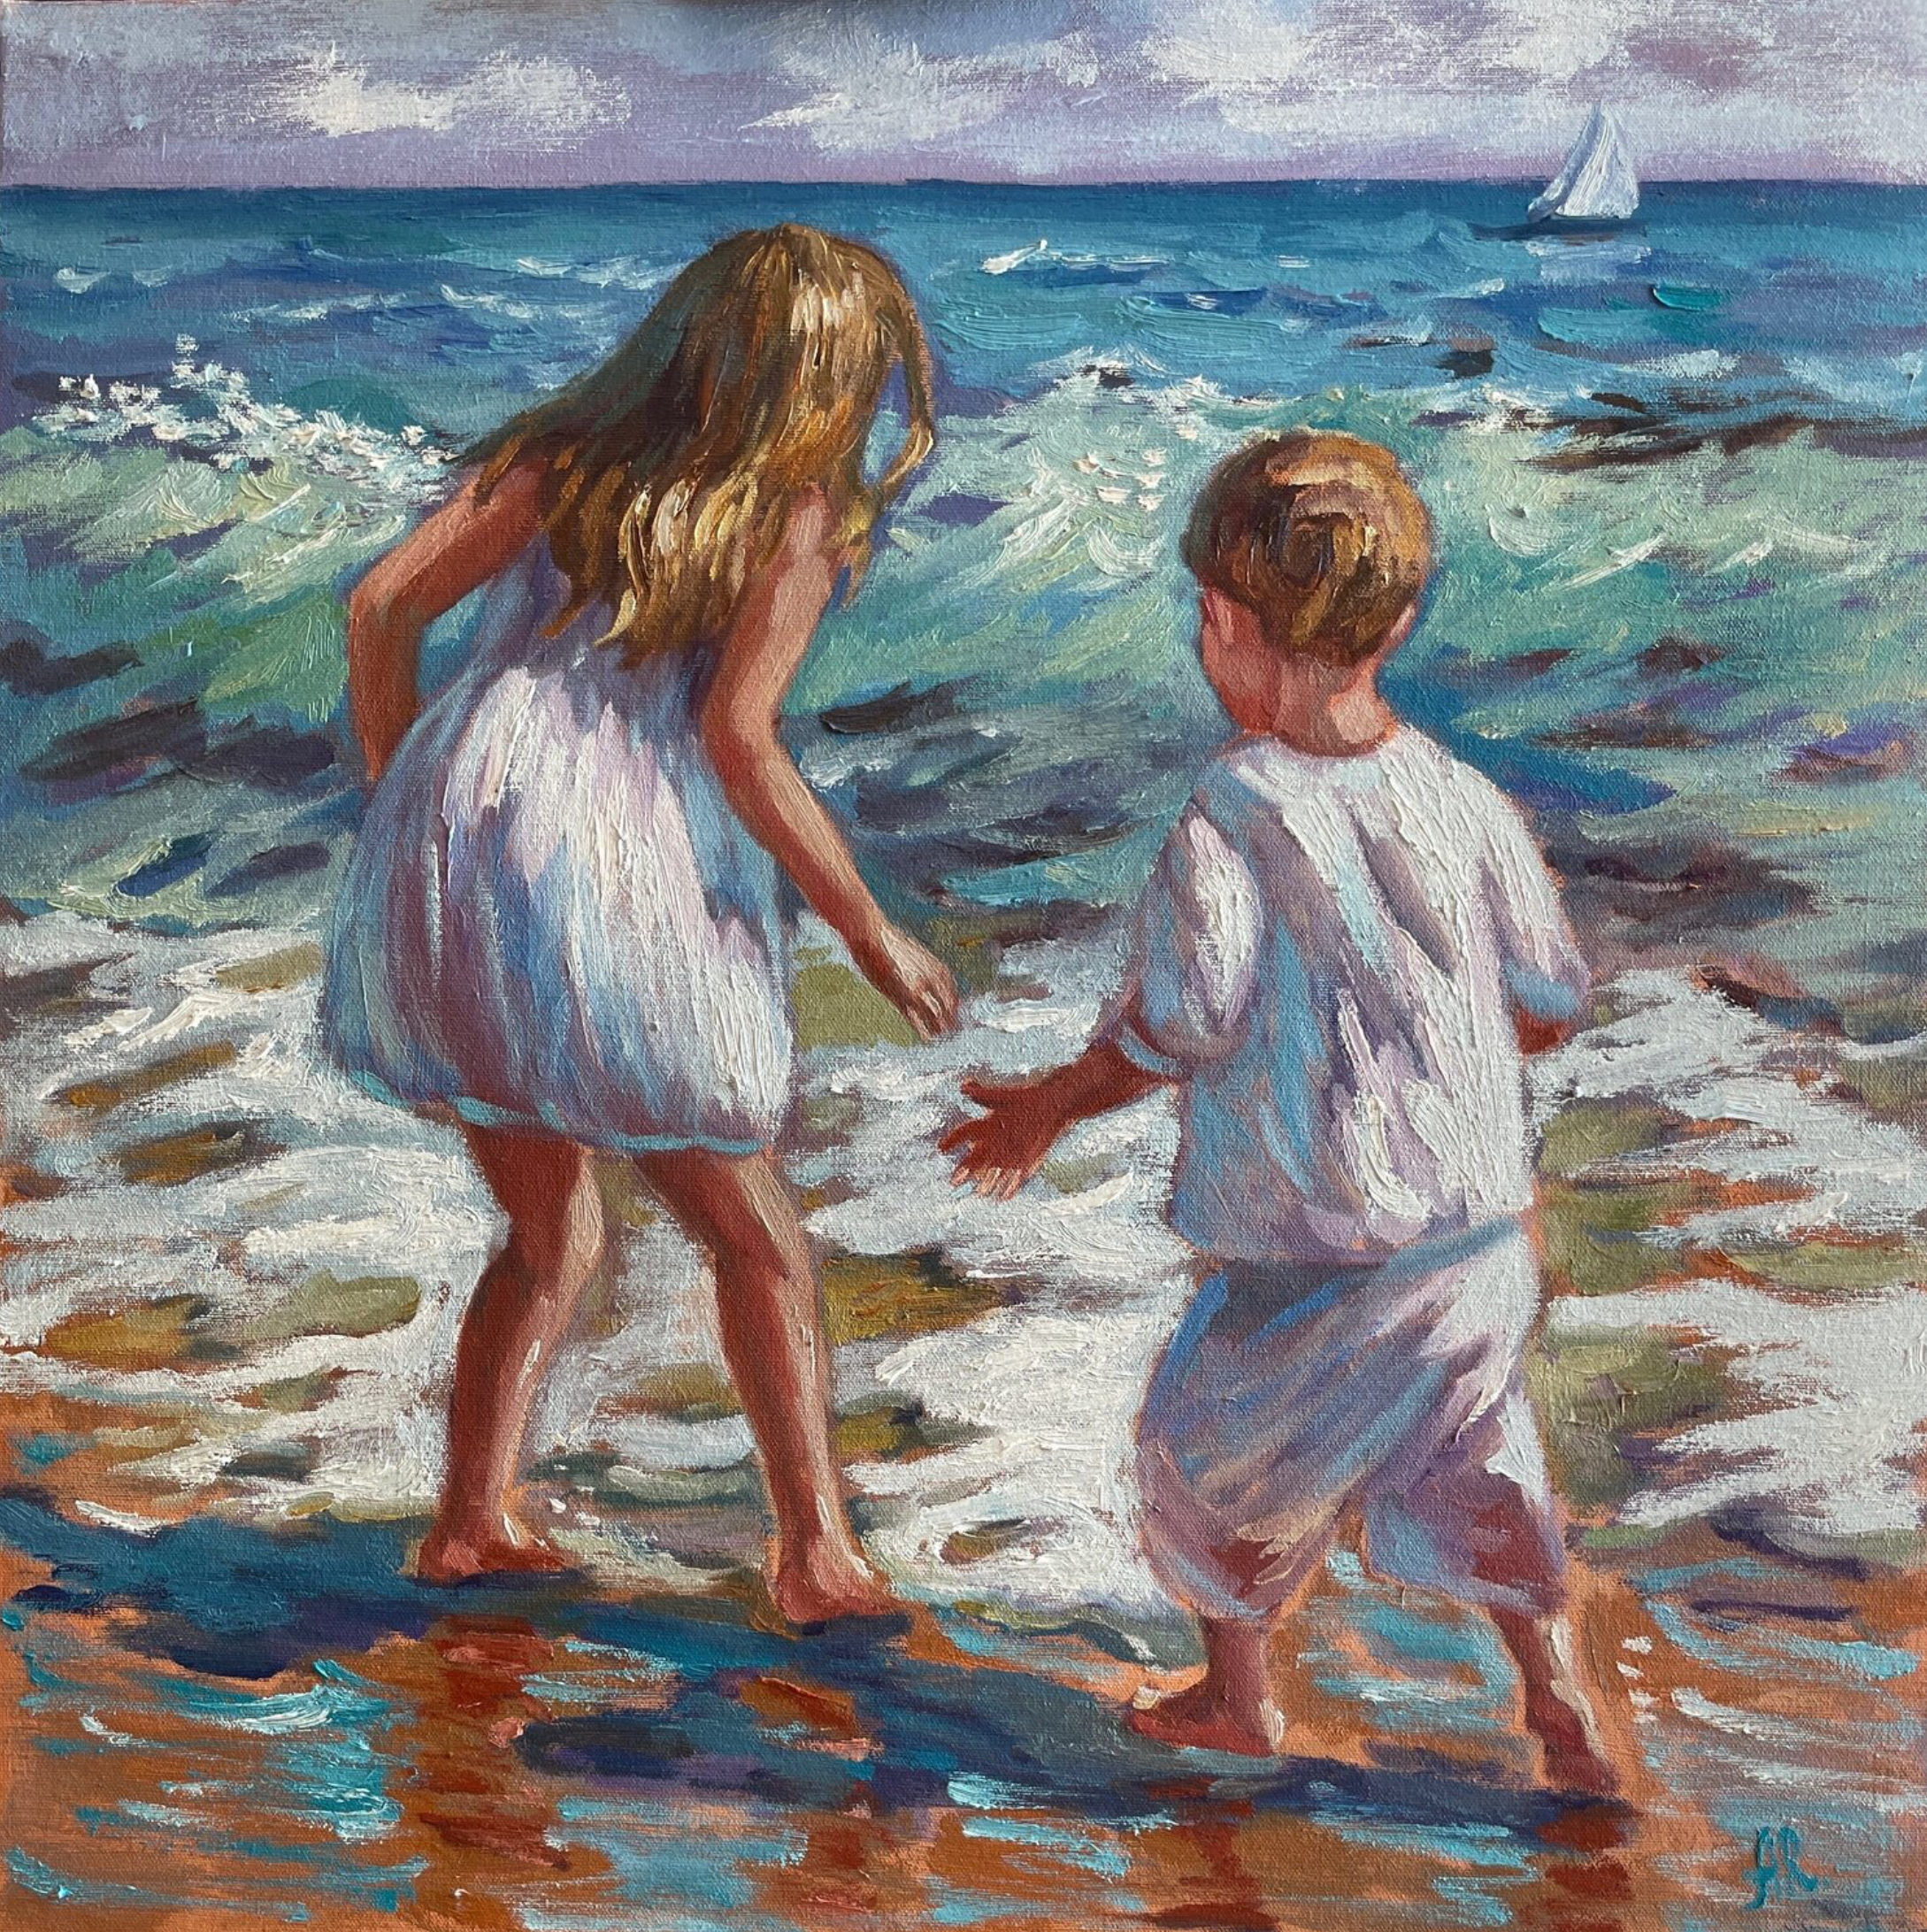 Le tableau "Chasing the Waves" d'Anna Reznikova montre des enfants jouant au bord de la mer. Couleurs principalement turquoise, bleu.